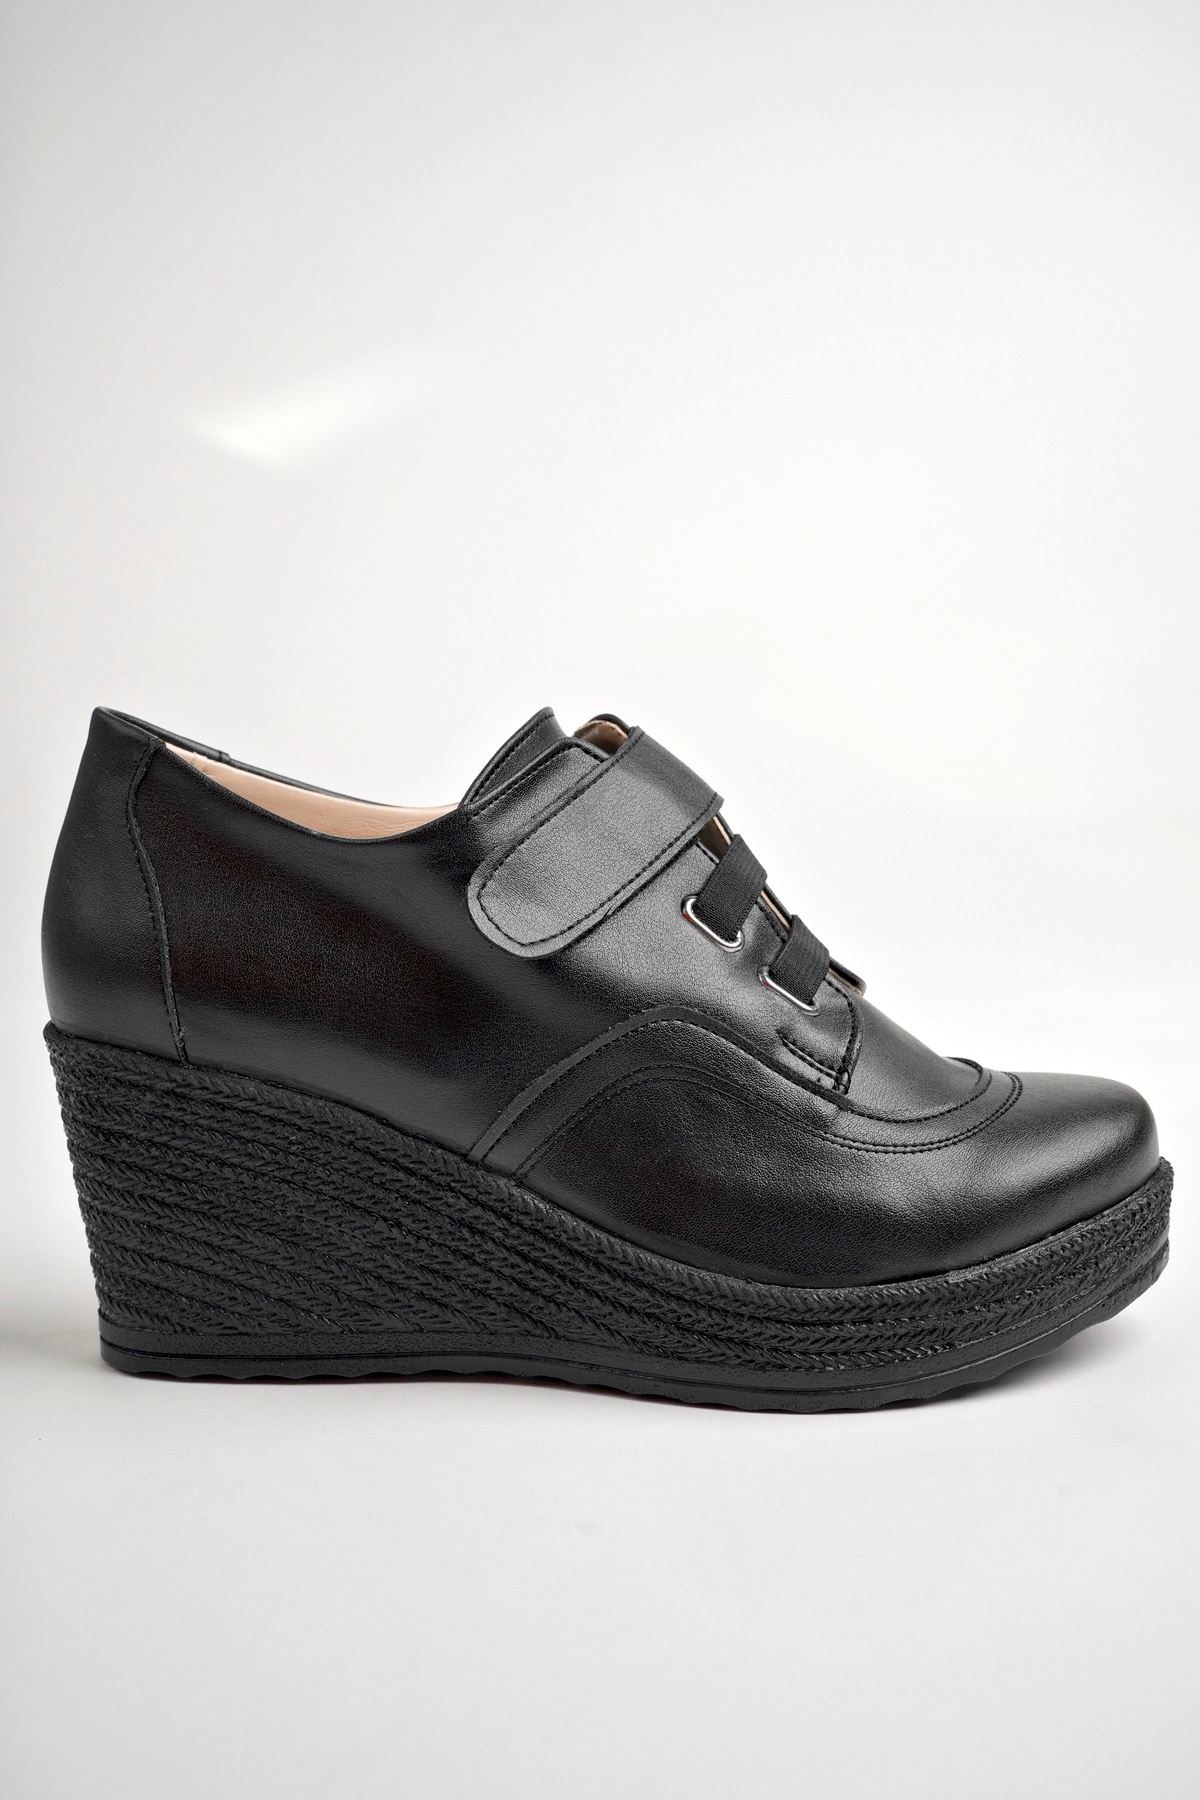 Dolgu Topuk Siyah Cilt Ayakkabı